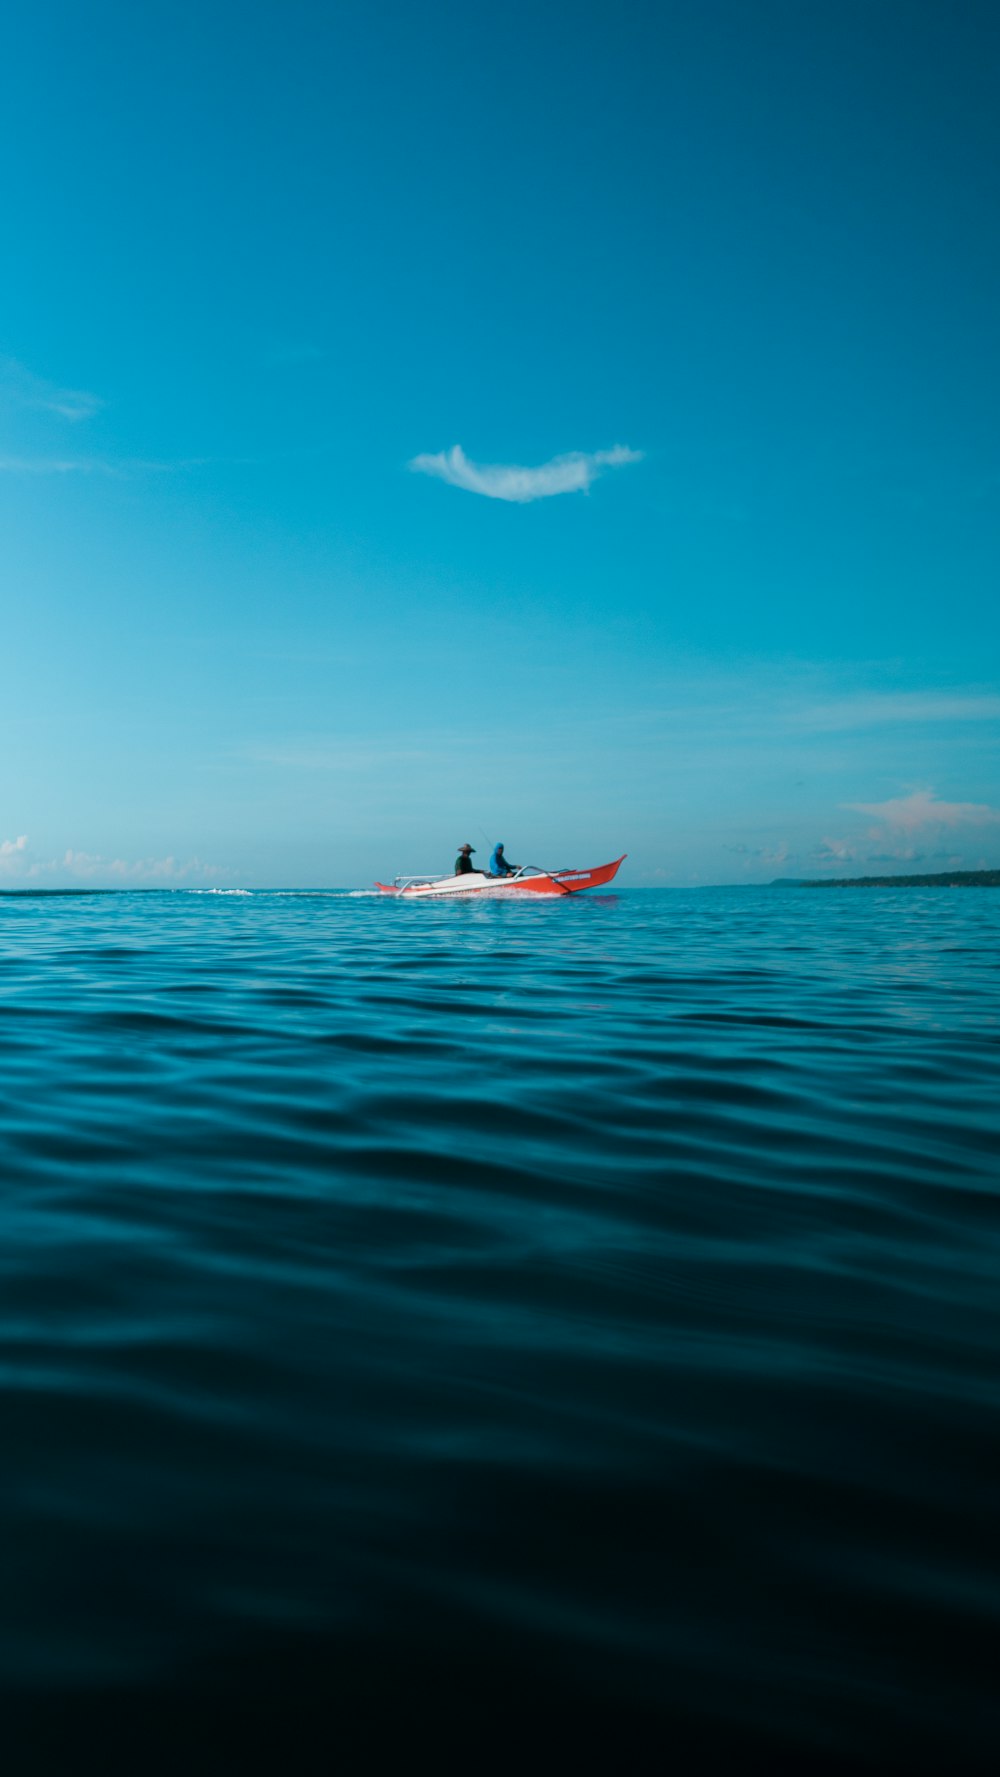 man in red kayak on sea during daytime